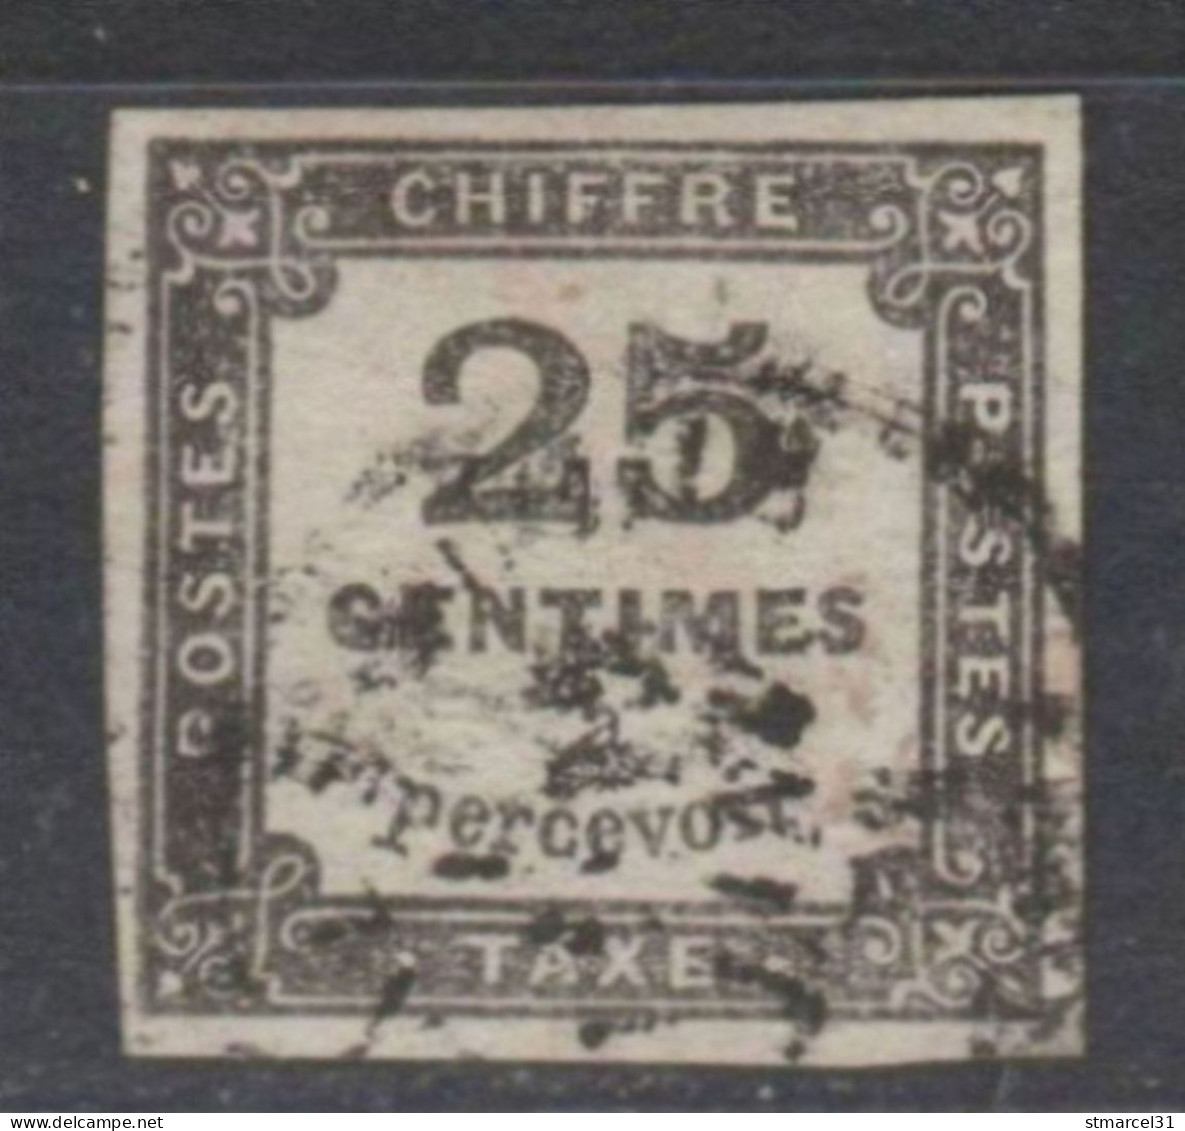 RARETE NUANCE GRIS NOIR Du N°5 TBE/Luxe Signé - 1859-1959 Afgestempeld